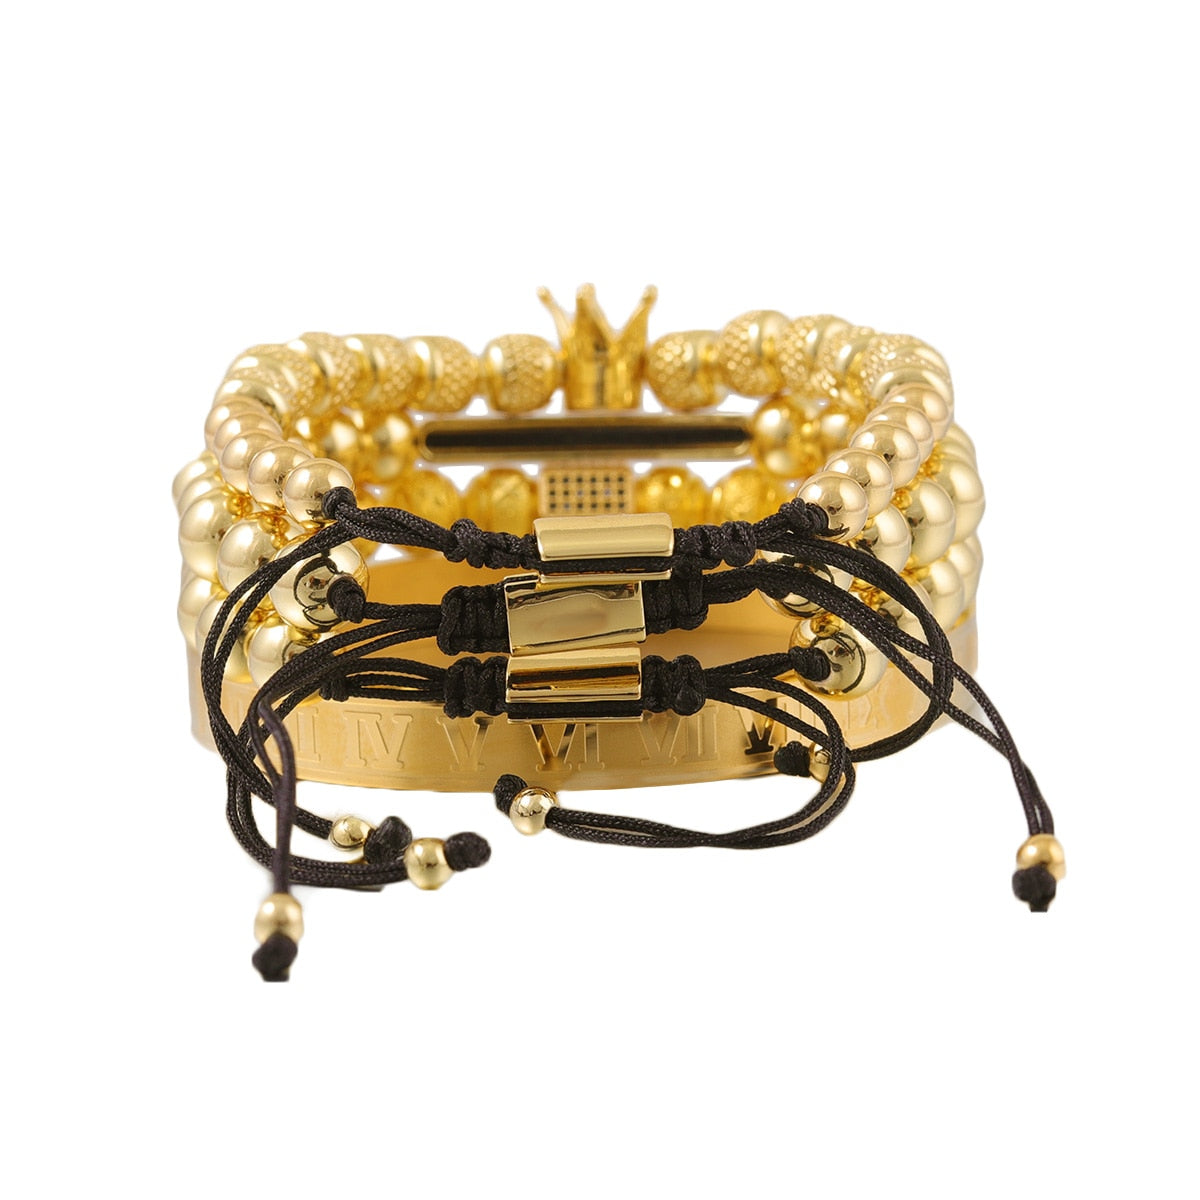 4pcs/set Luxury Men Bracelet